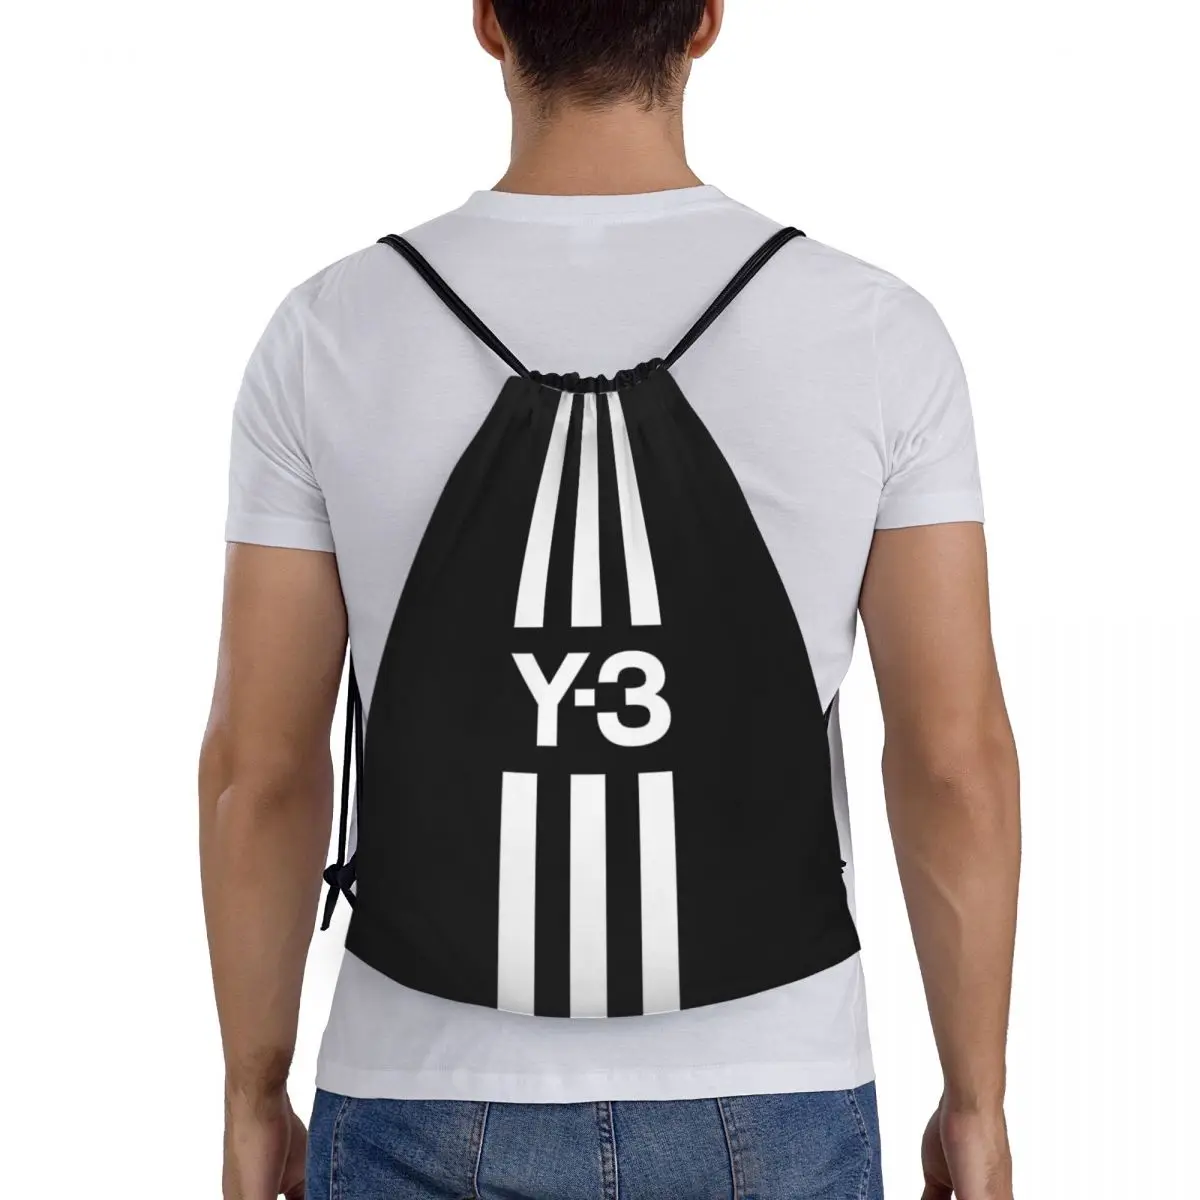 Özel Yohji Yamamoto İpli alışveriş çantası Yoga Sırt Çantaları Erkek Kadın Spor Salonu Sackpack